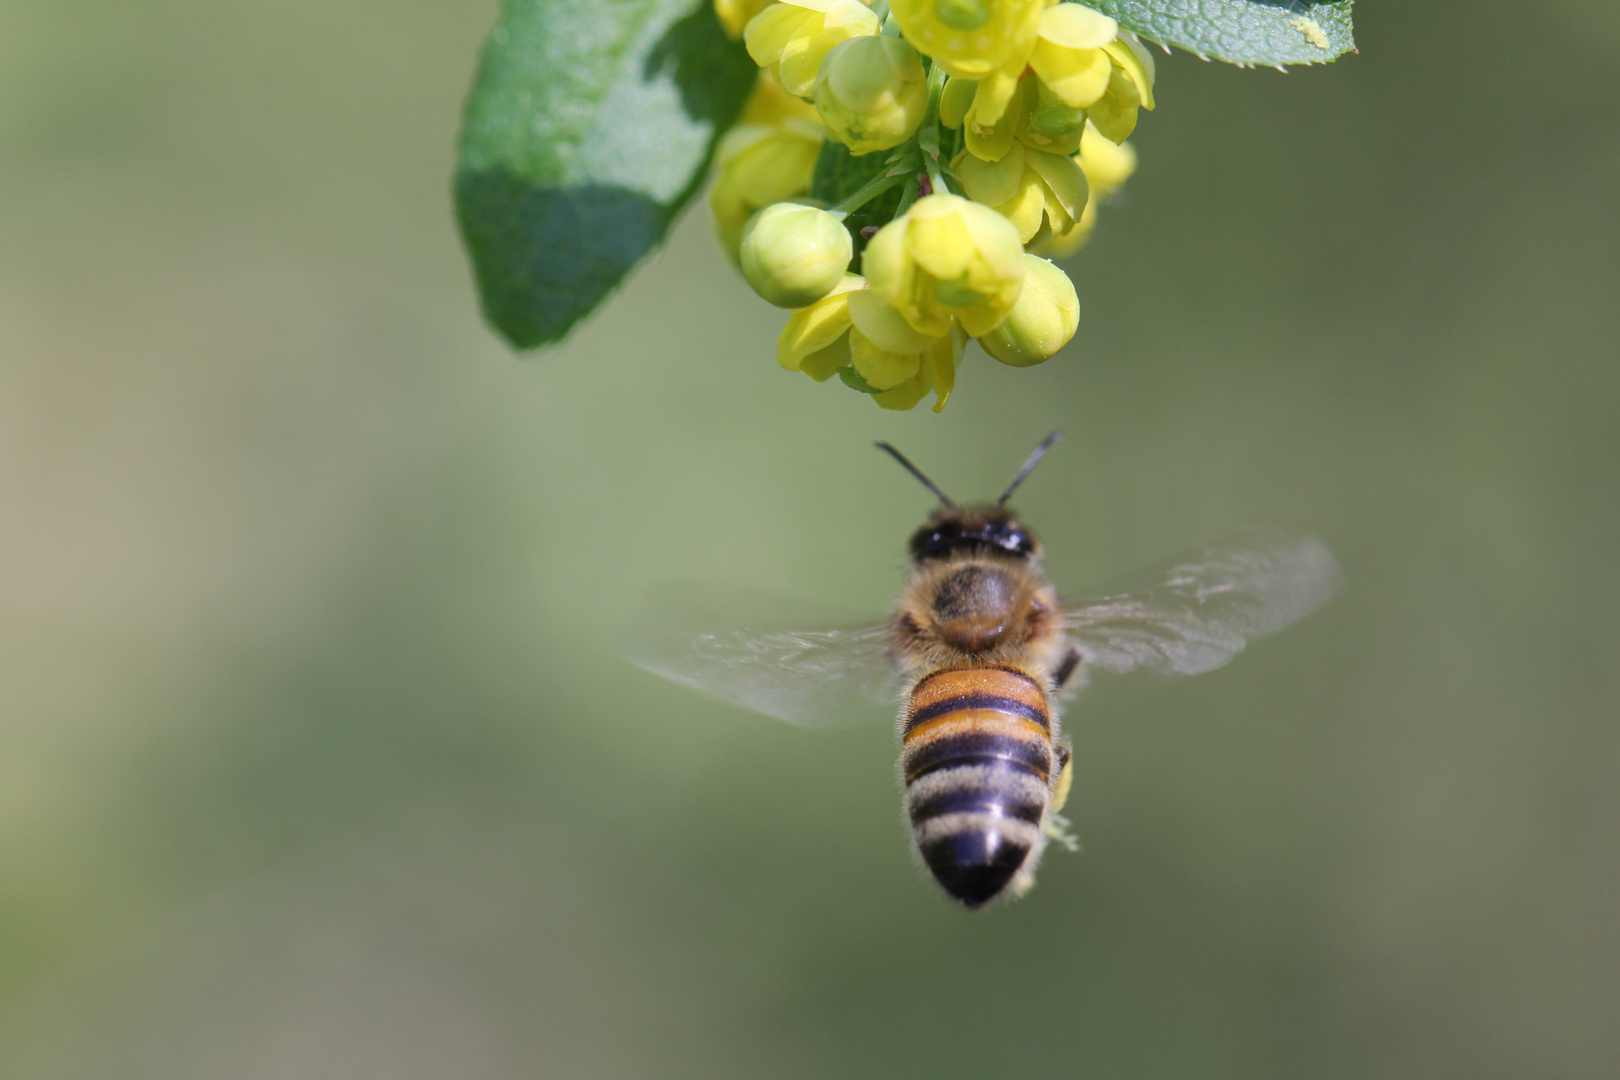 L'ape che raggiungeva il fiore